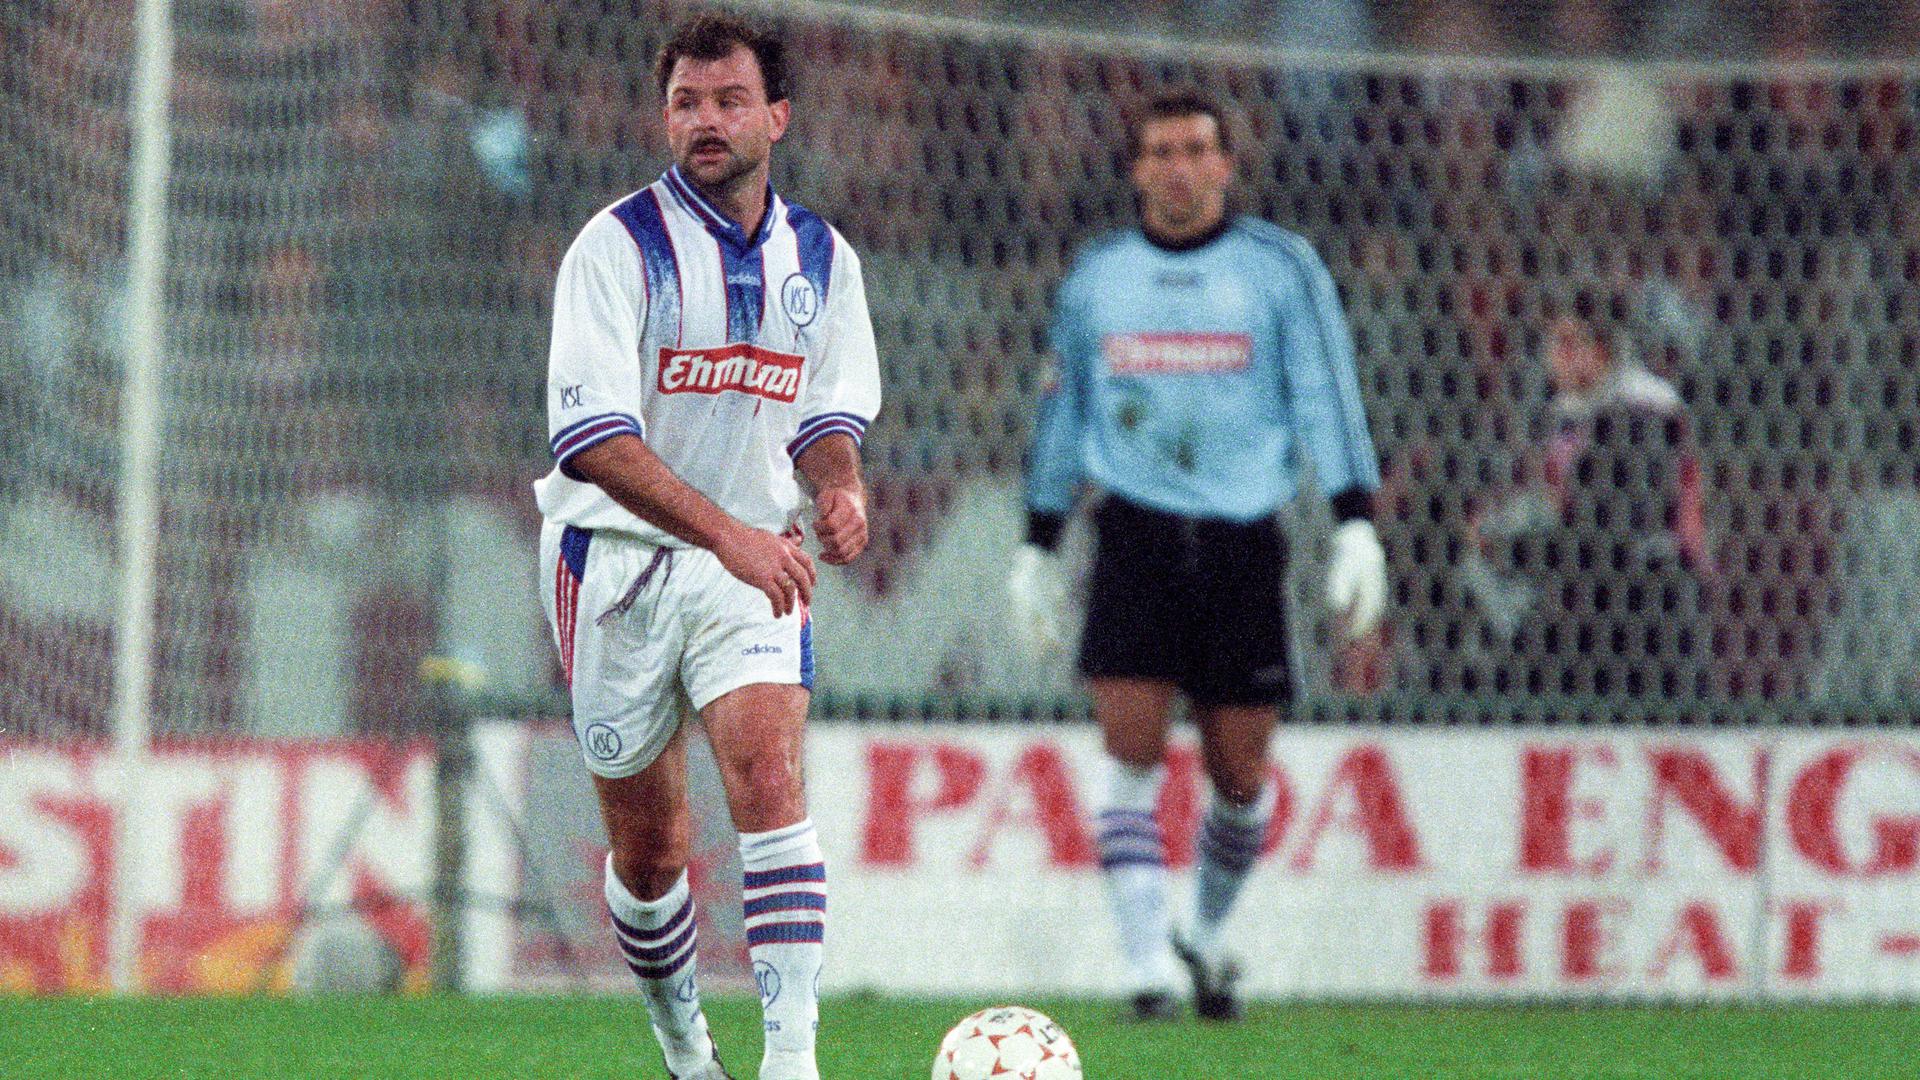 Schmerz befreit für 90 Minuten: Michael Wittwer lässt sich am 29. Oktober 1996 trotz doppeltem Bänderriss das Europapokalspiel gegen AS Rom nicht entgehen. 